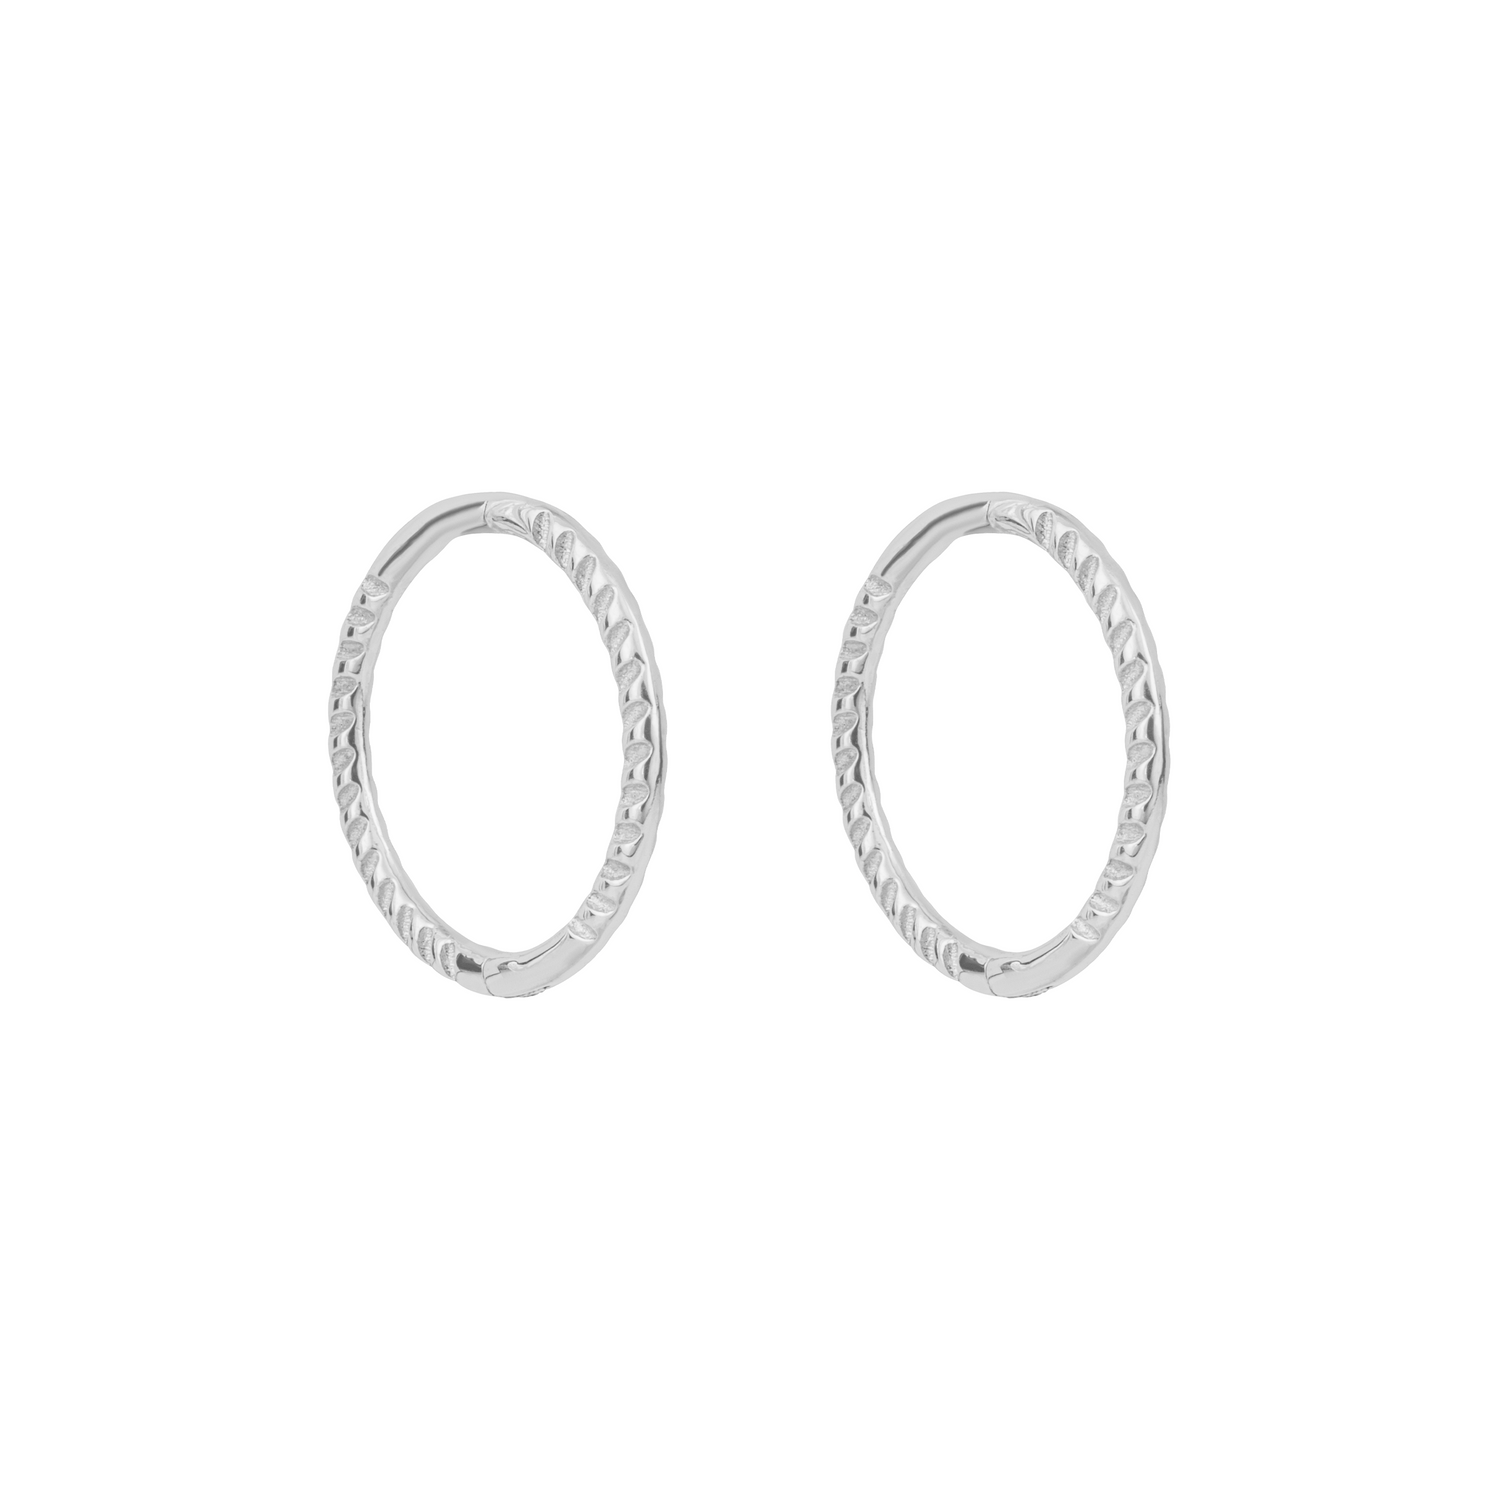 Rope Effect Hoop Earrings in 9ct White Gold - Robert Anthony Jewellers, Edinburgh